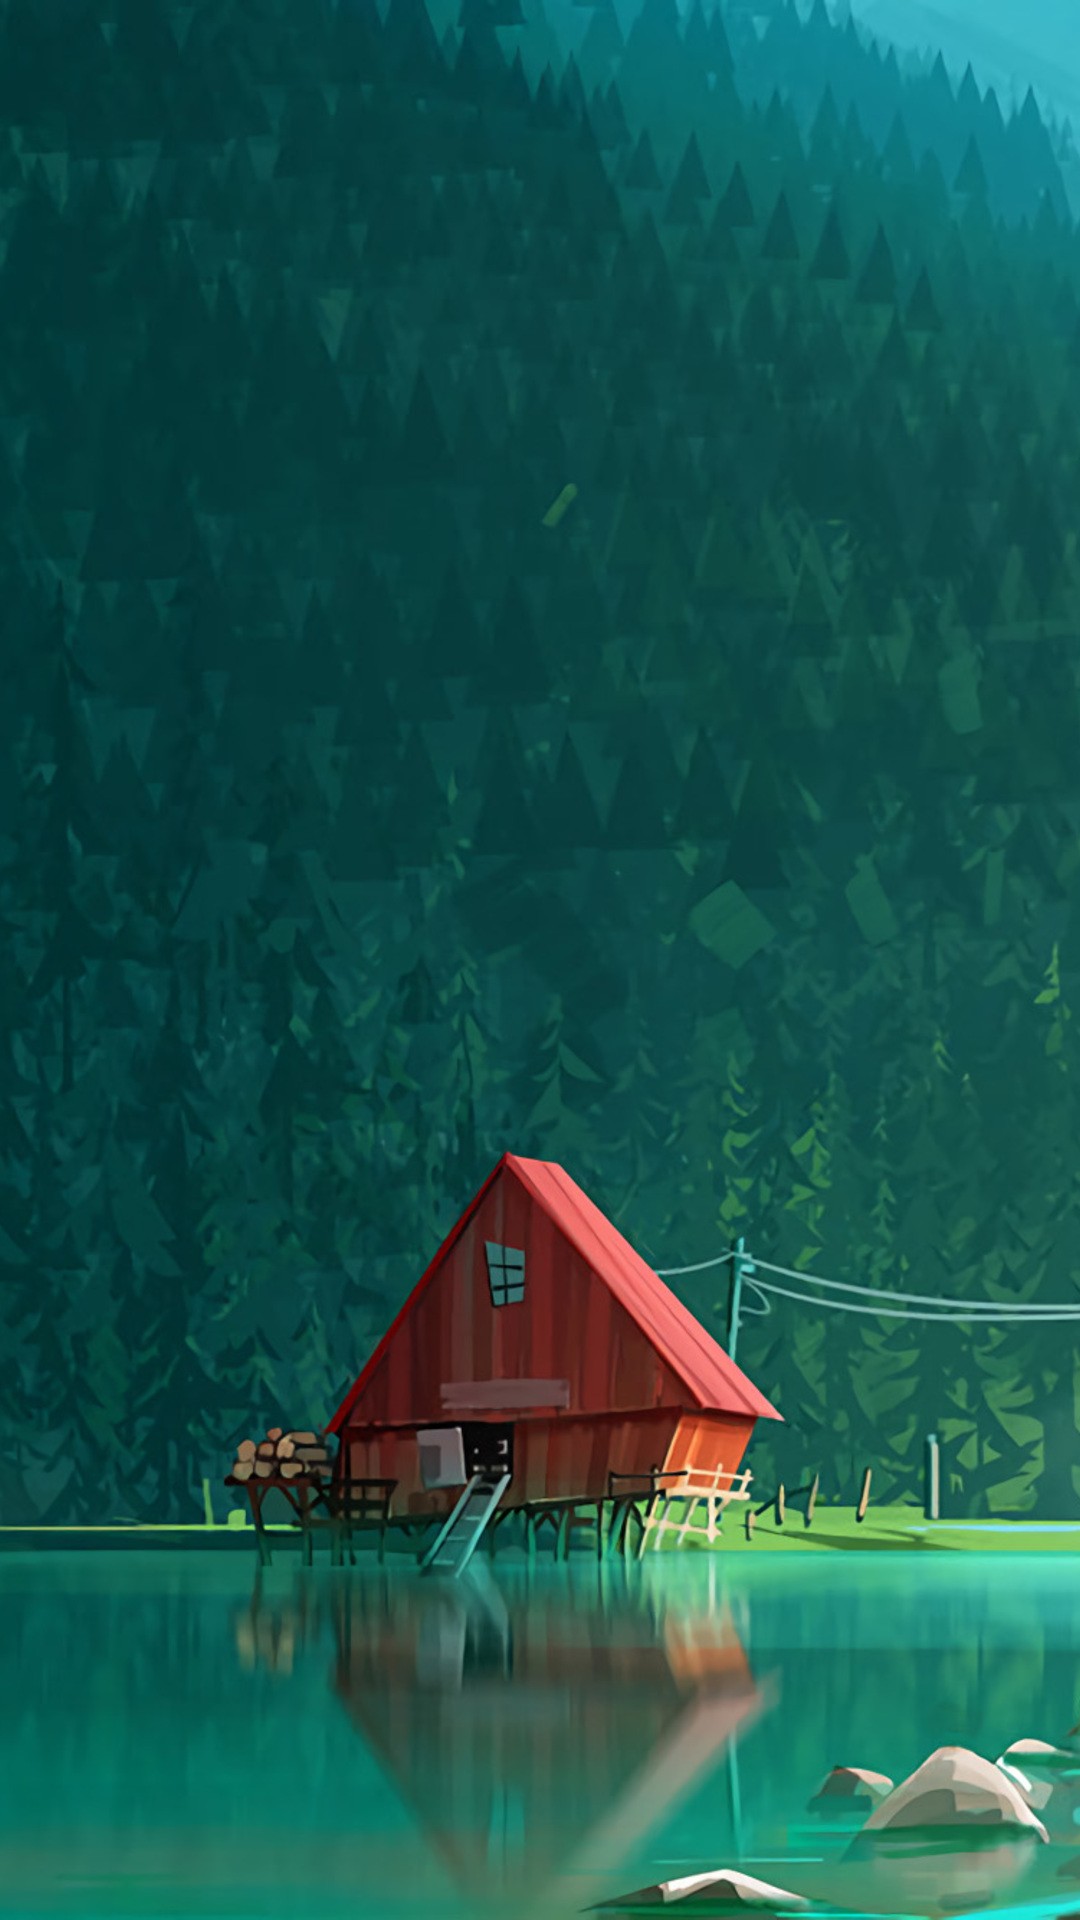 mi wallpaper,nature,green,barn,illustration,rural area